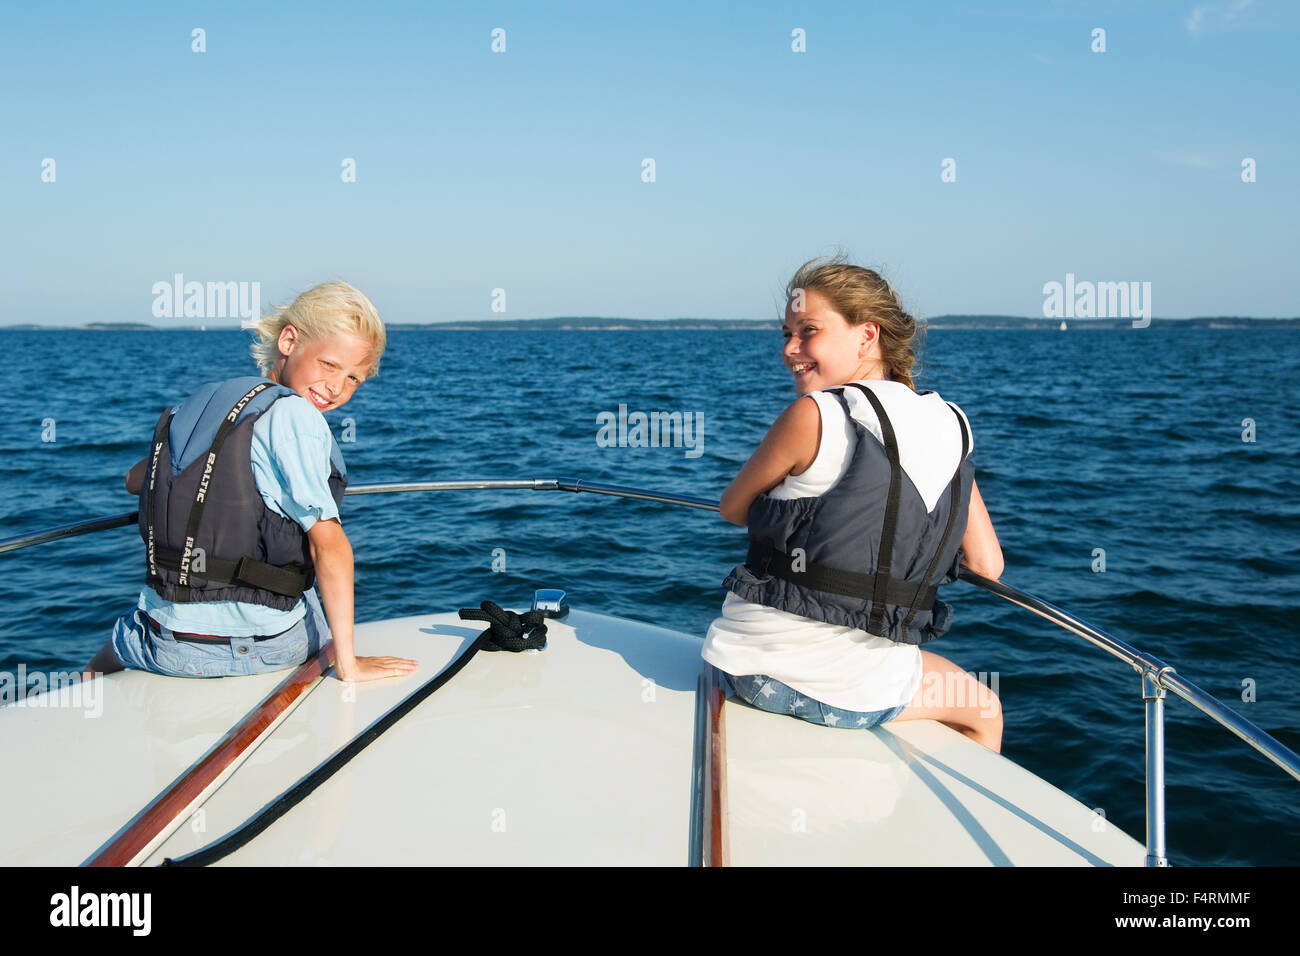 Suecia, Stockholms Skargard, Sodermanland, Jungfrufjarden, Retrato de chico y chica (12-13) en el barco Foto de stock